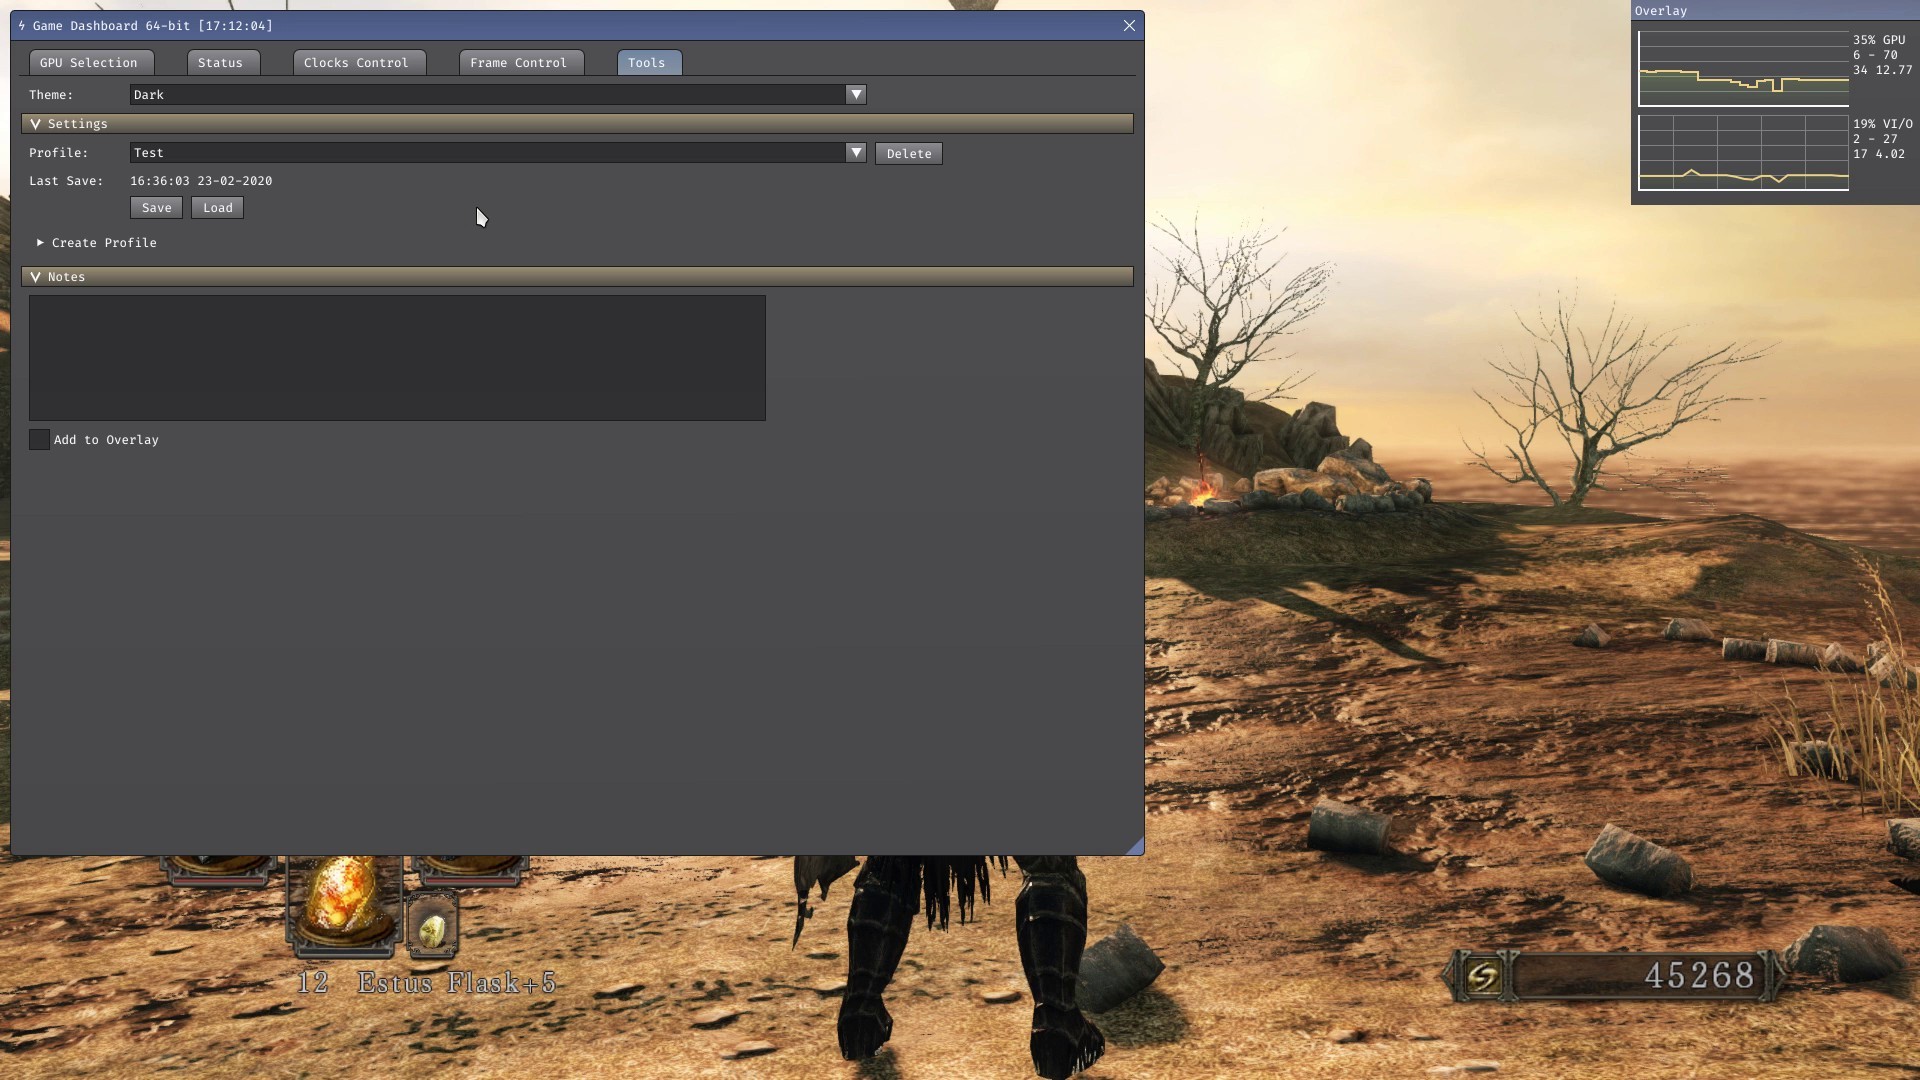 Game Dashboard screenshot